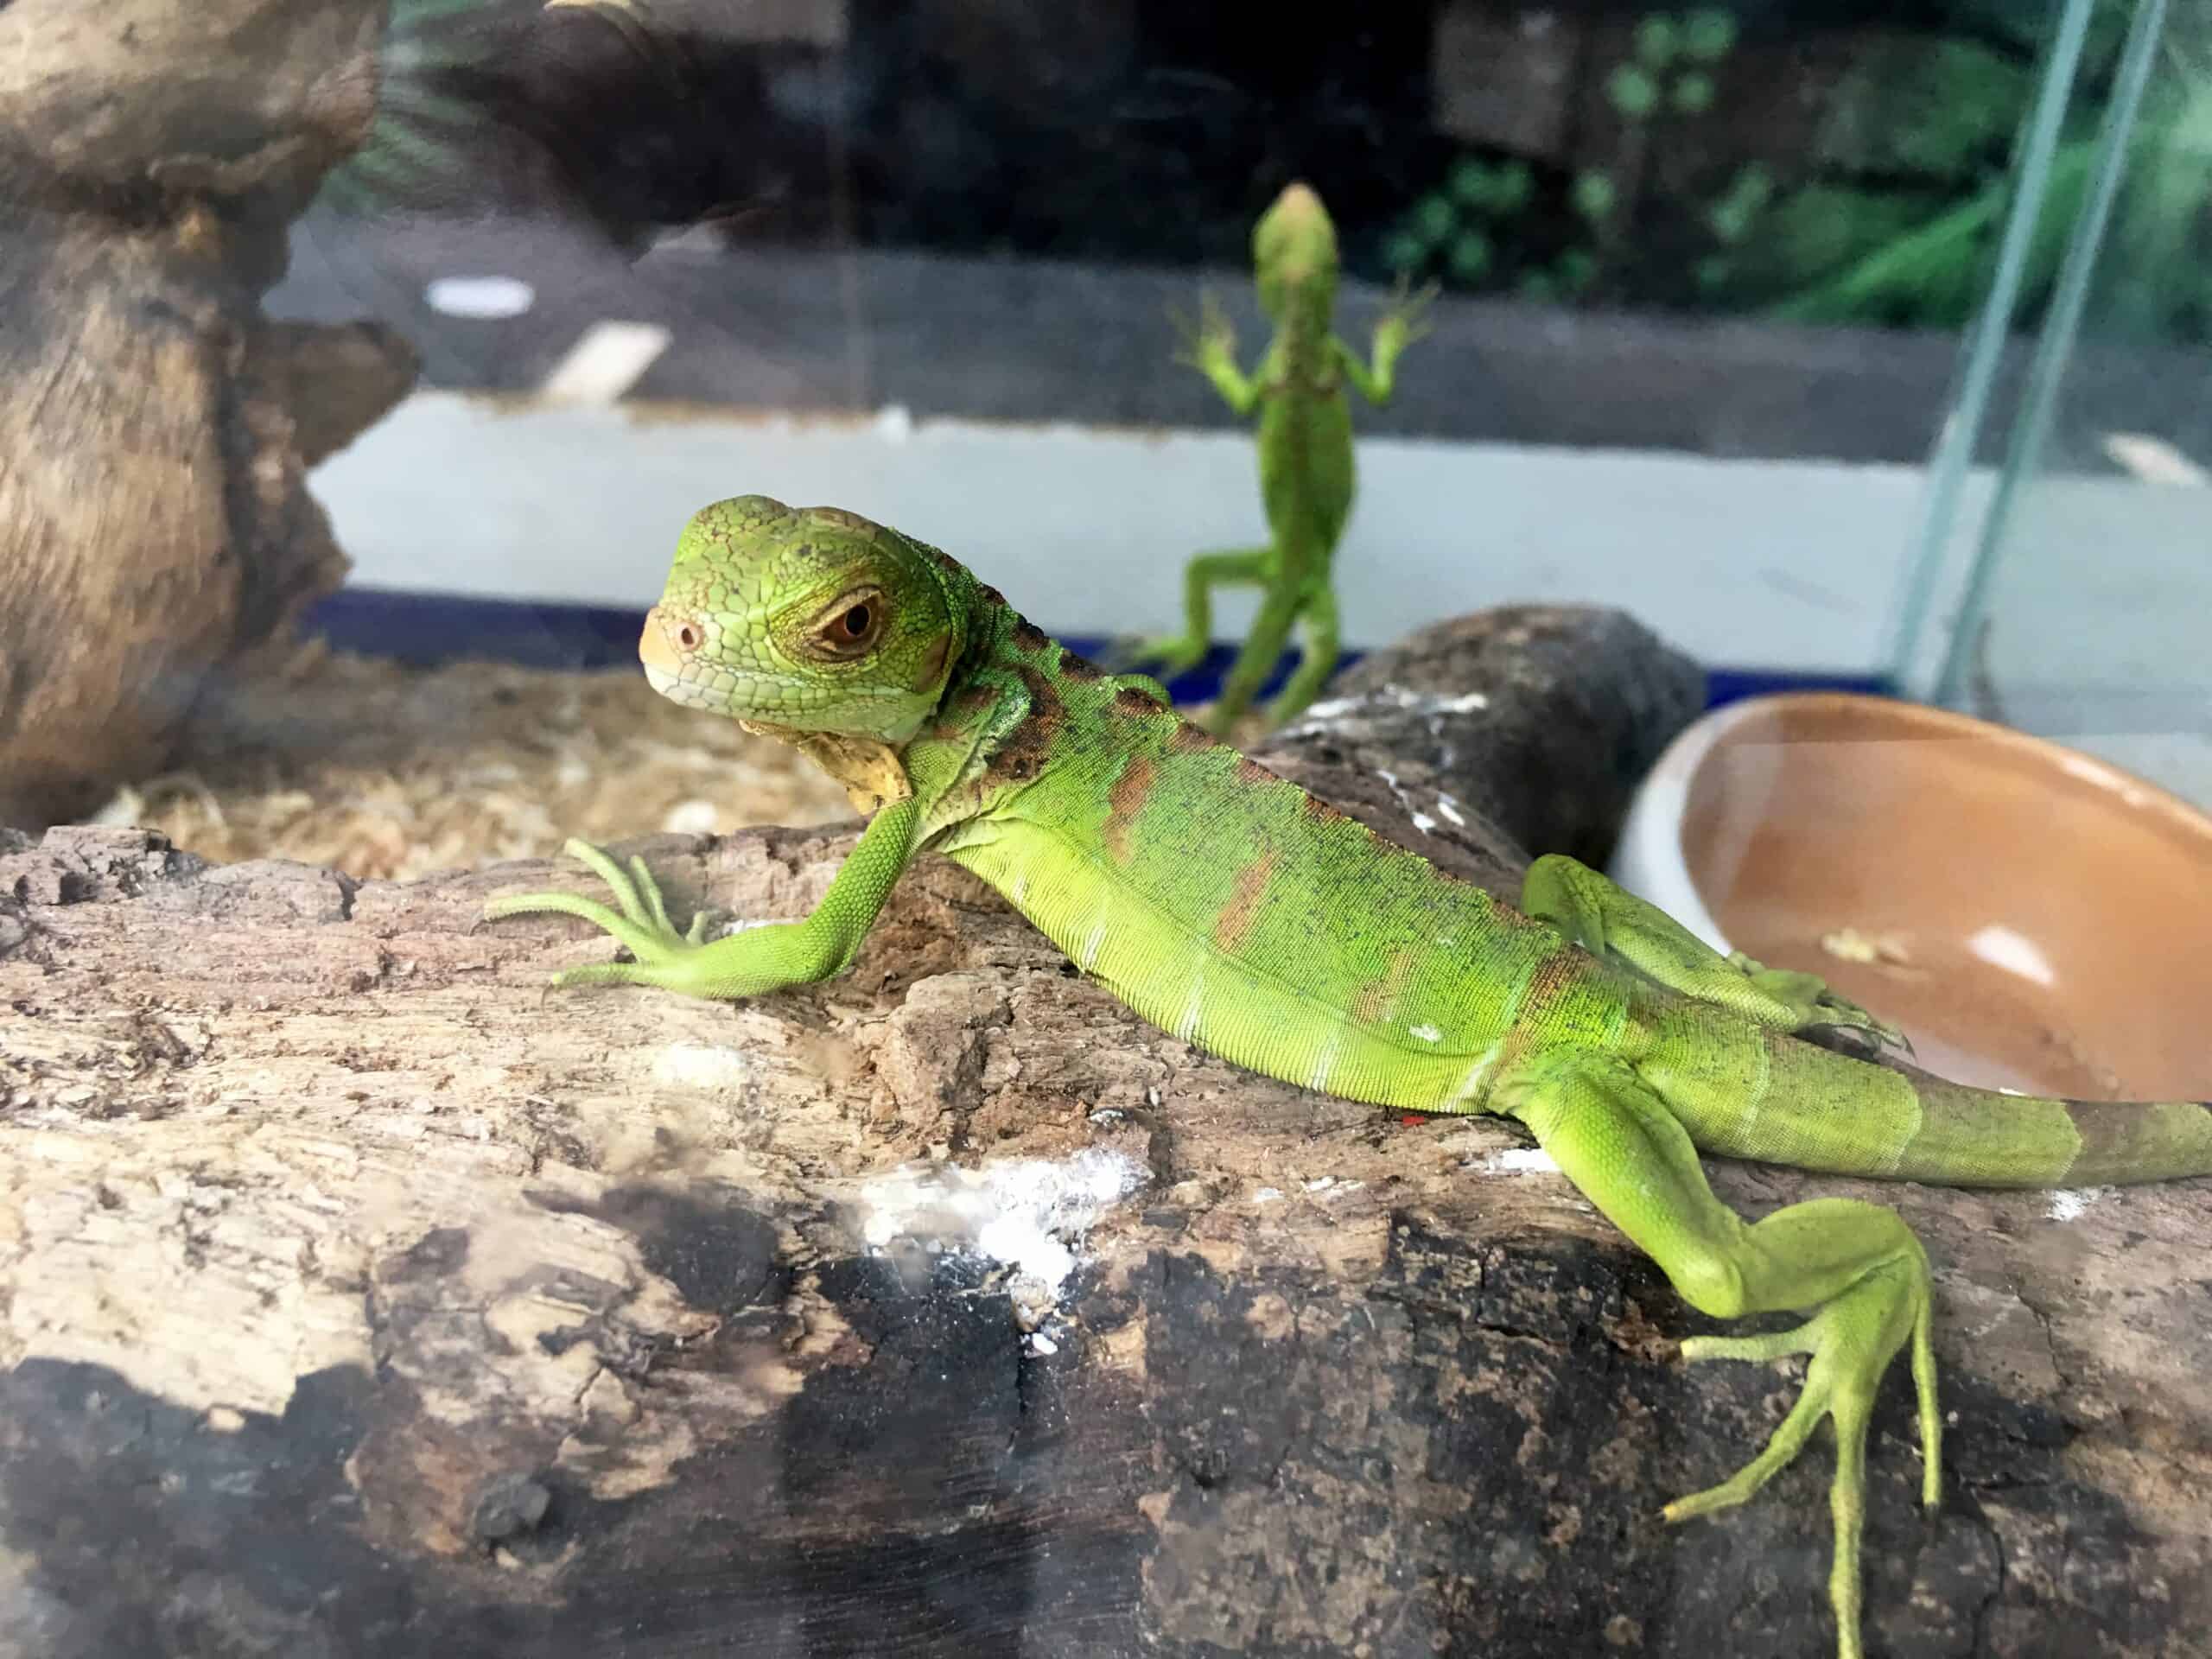 Green Iguana in terrarium pet store.